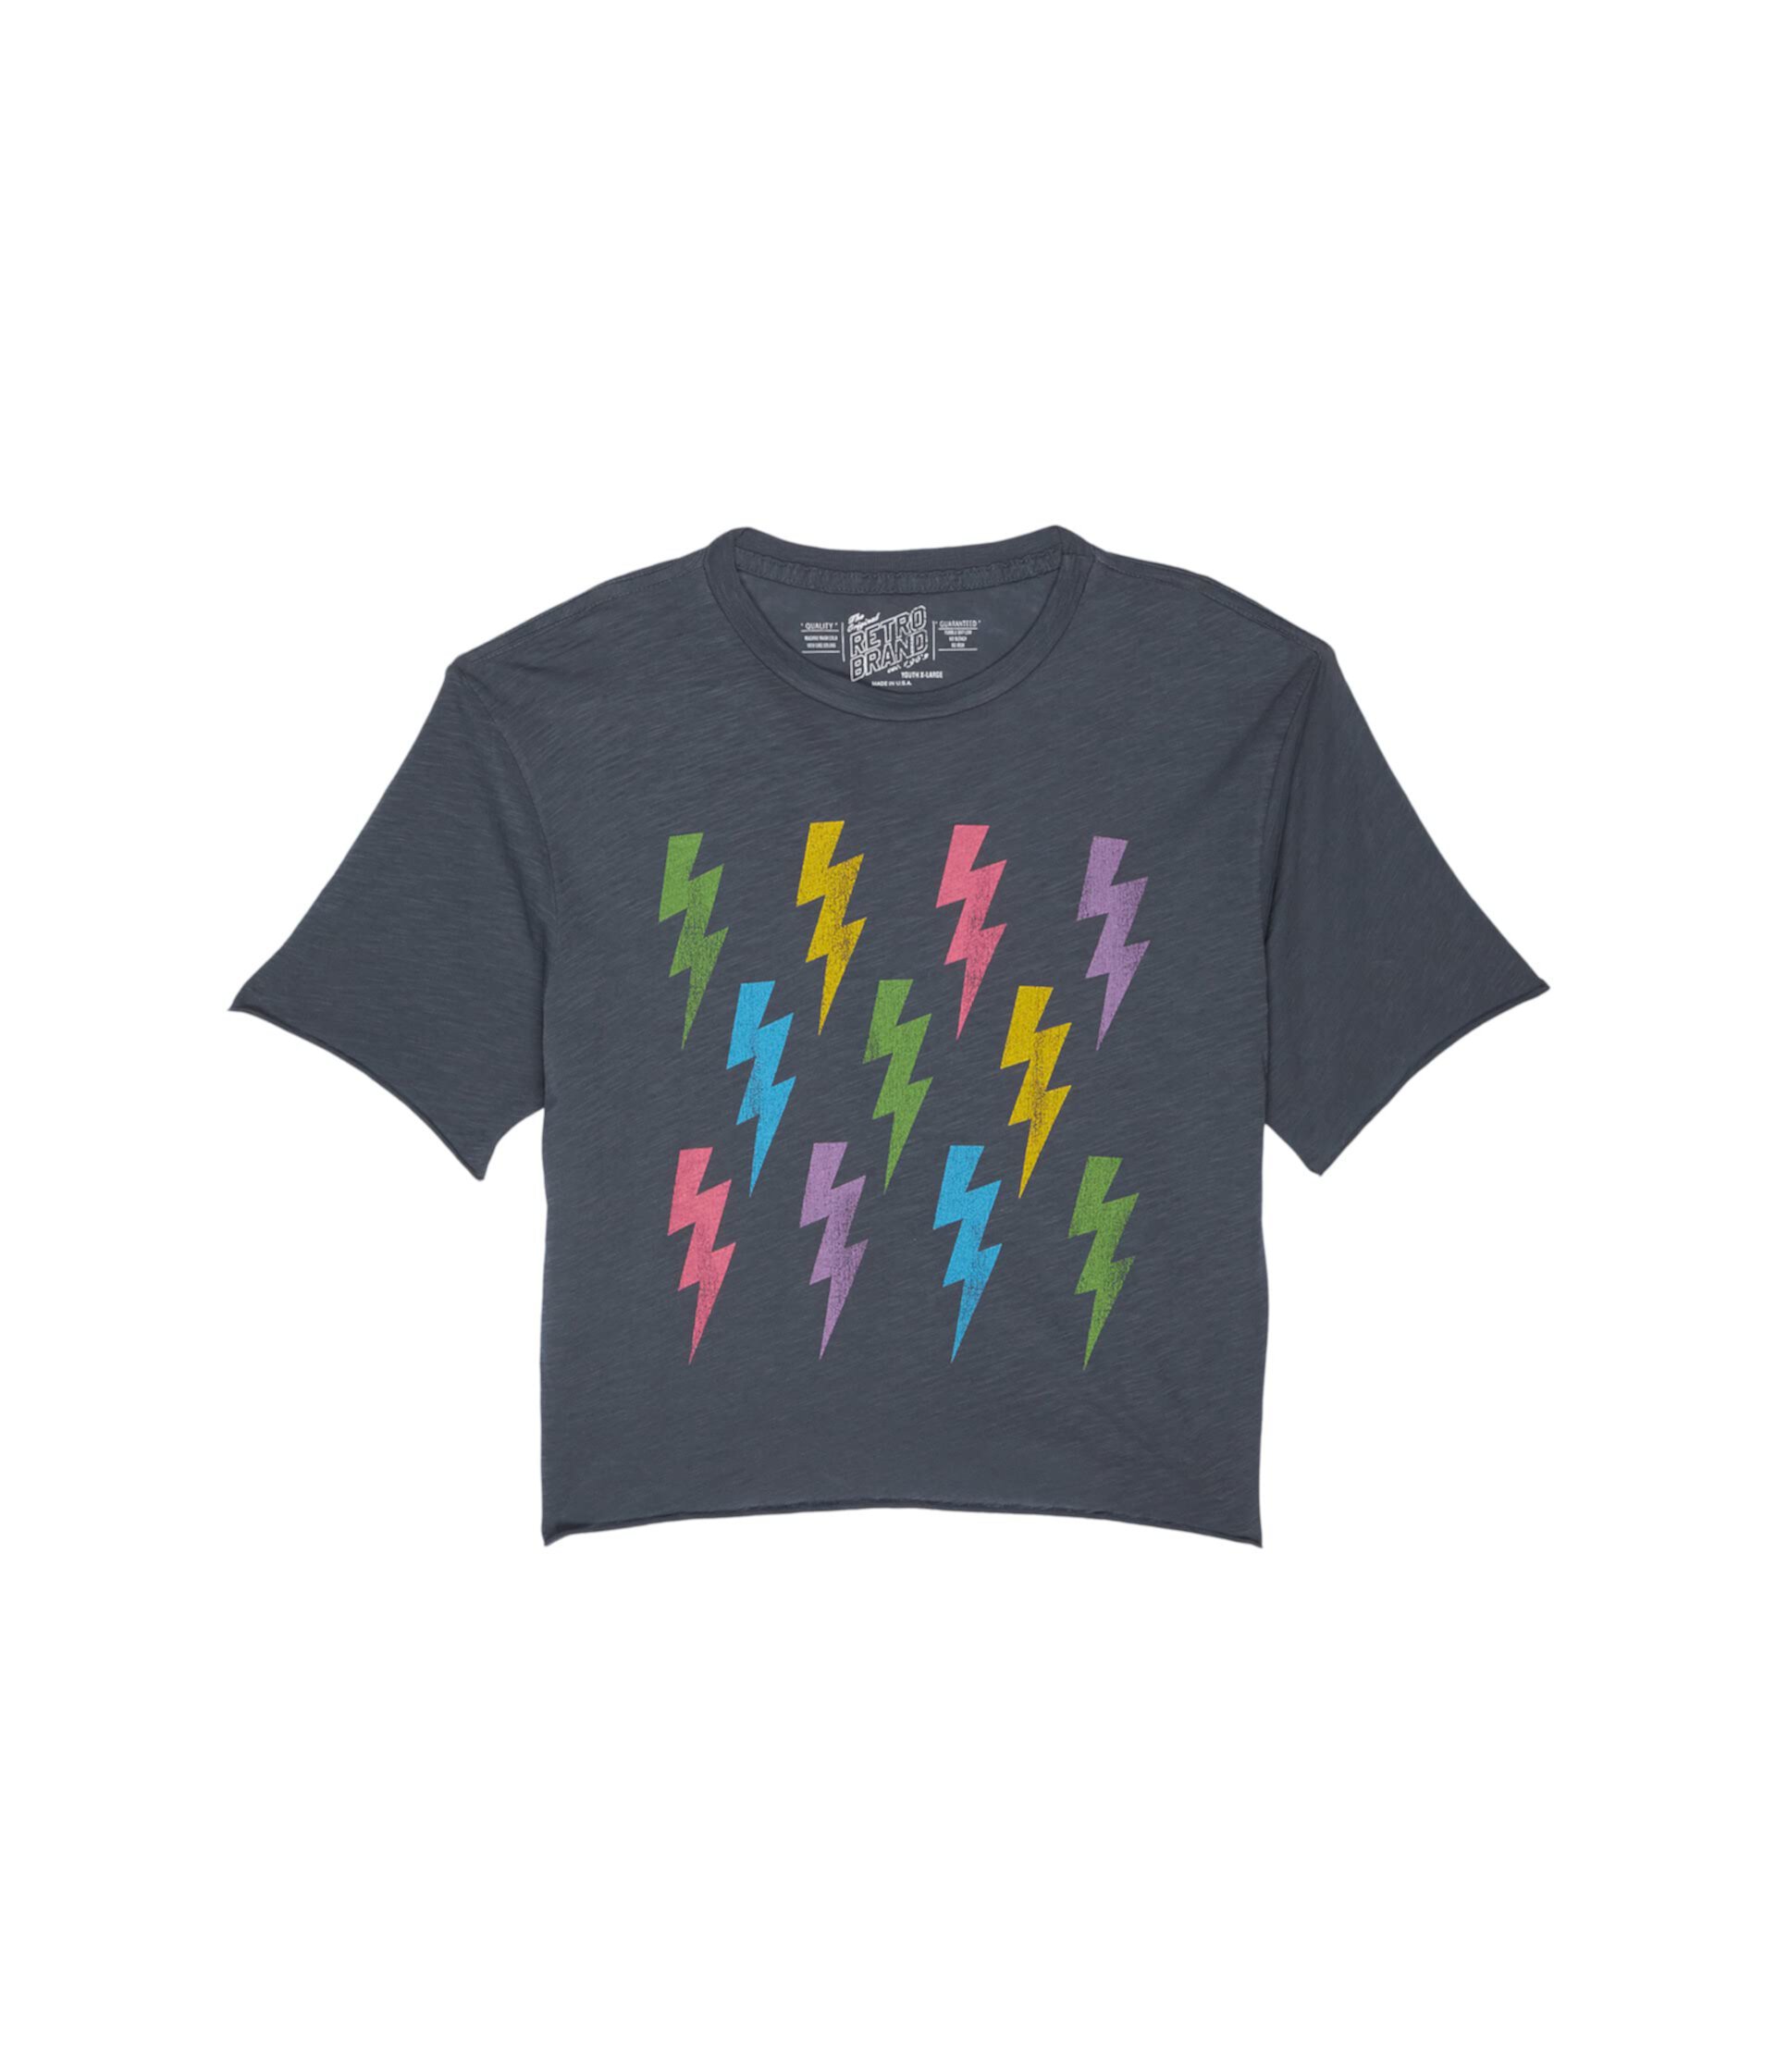 Слегка укороченная футболка с круглым вырезом Lightning Bolt (для больших детей) The Original Retro Brand Kids